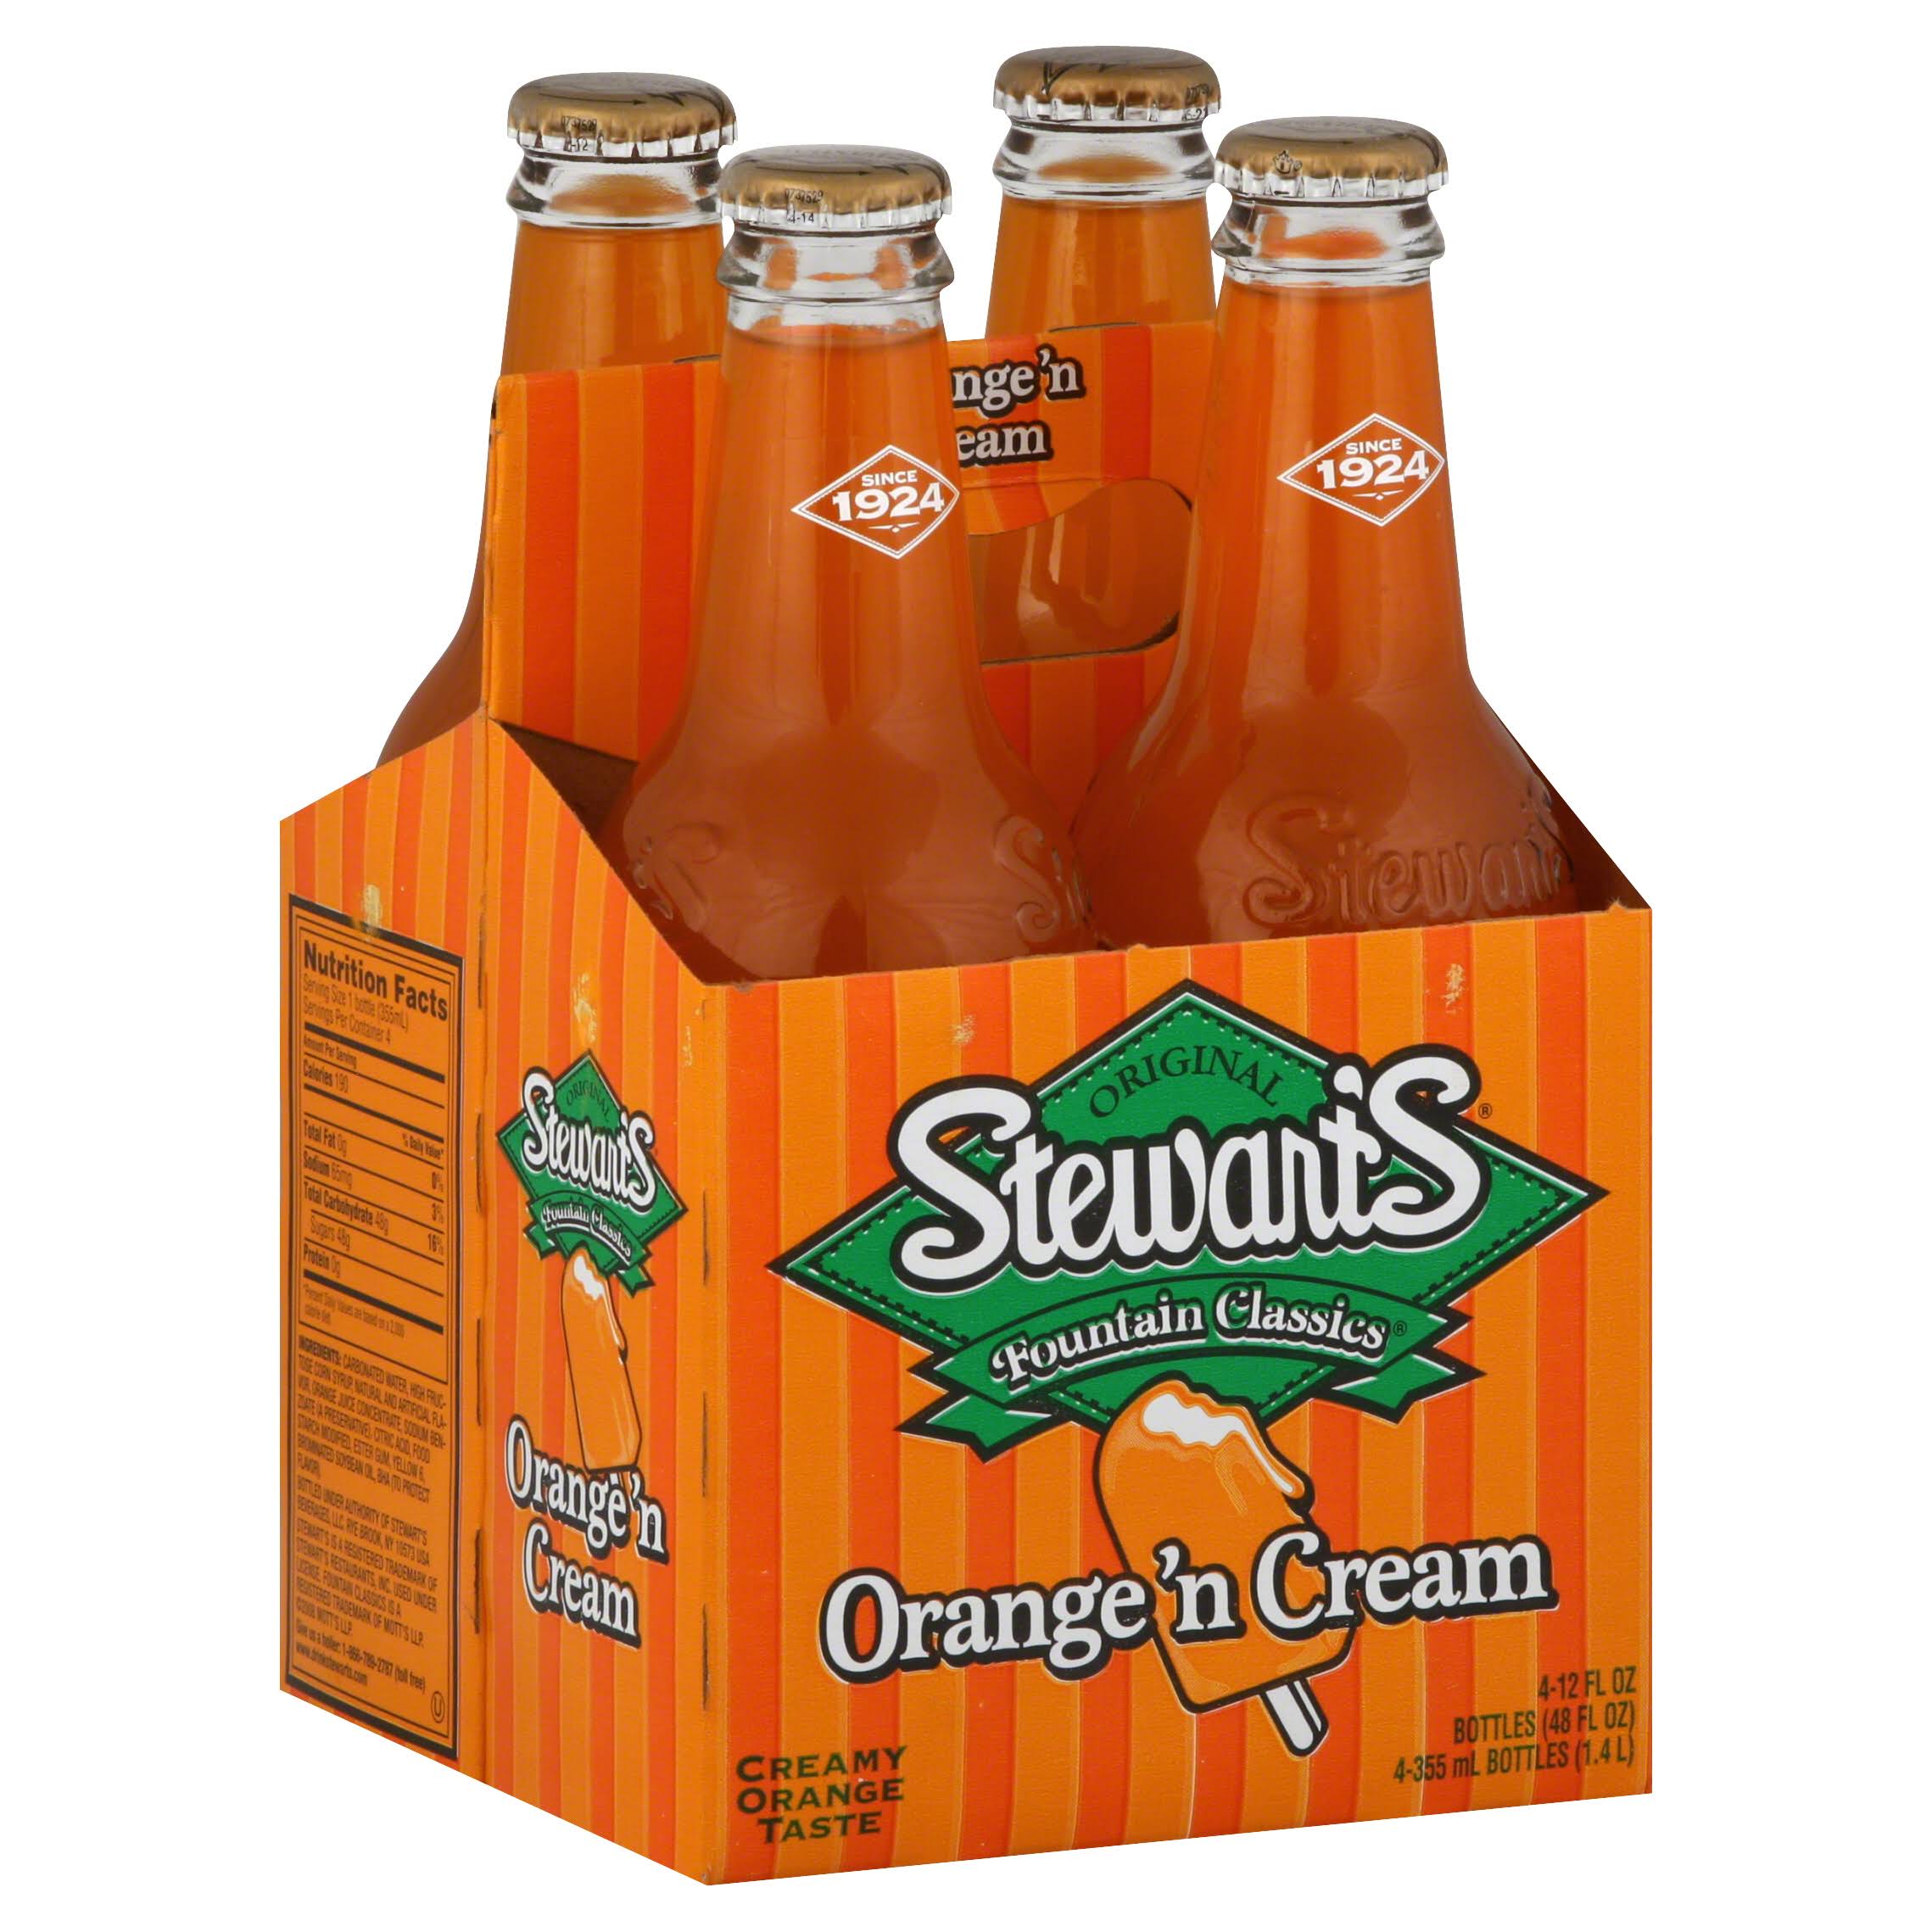 Stewart's Fountain Classics Orange 'N Cream Soda - 12oz, 4 Bottles